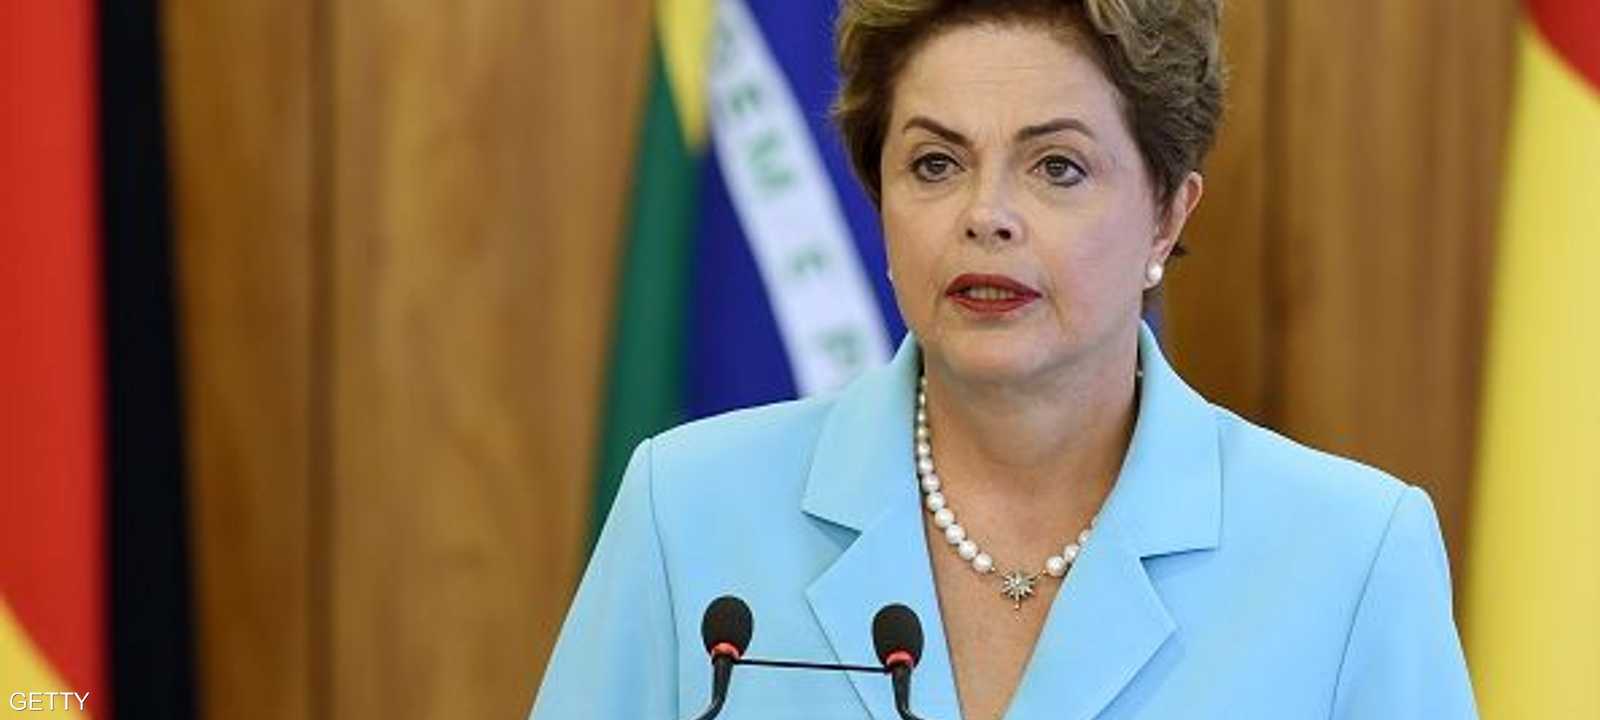 روسيف قالت إن البرازيل ستتجاوز الصعوبات التي تشهدها